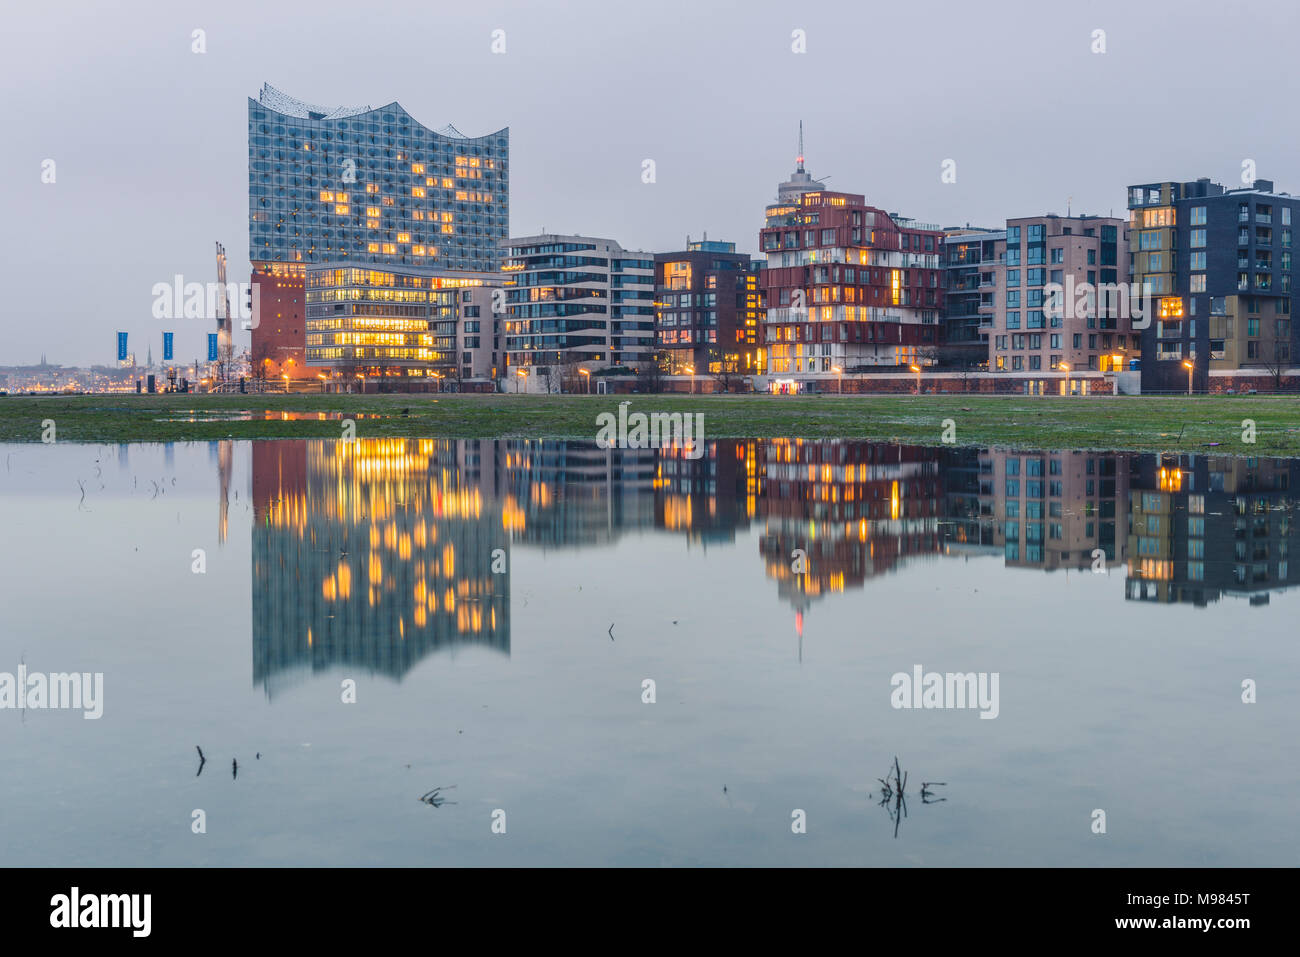 Alemania, Hamburgo, Hafencity, edificios modernos y Elbe Philharmonic Hall en la noche Foto de stock